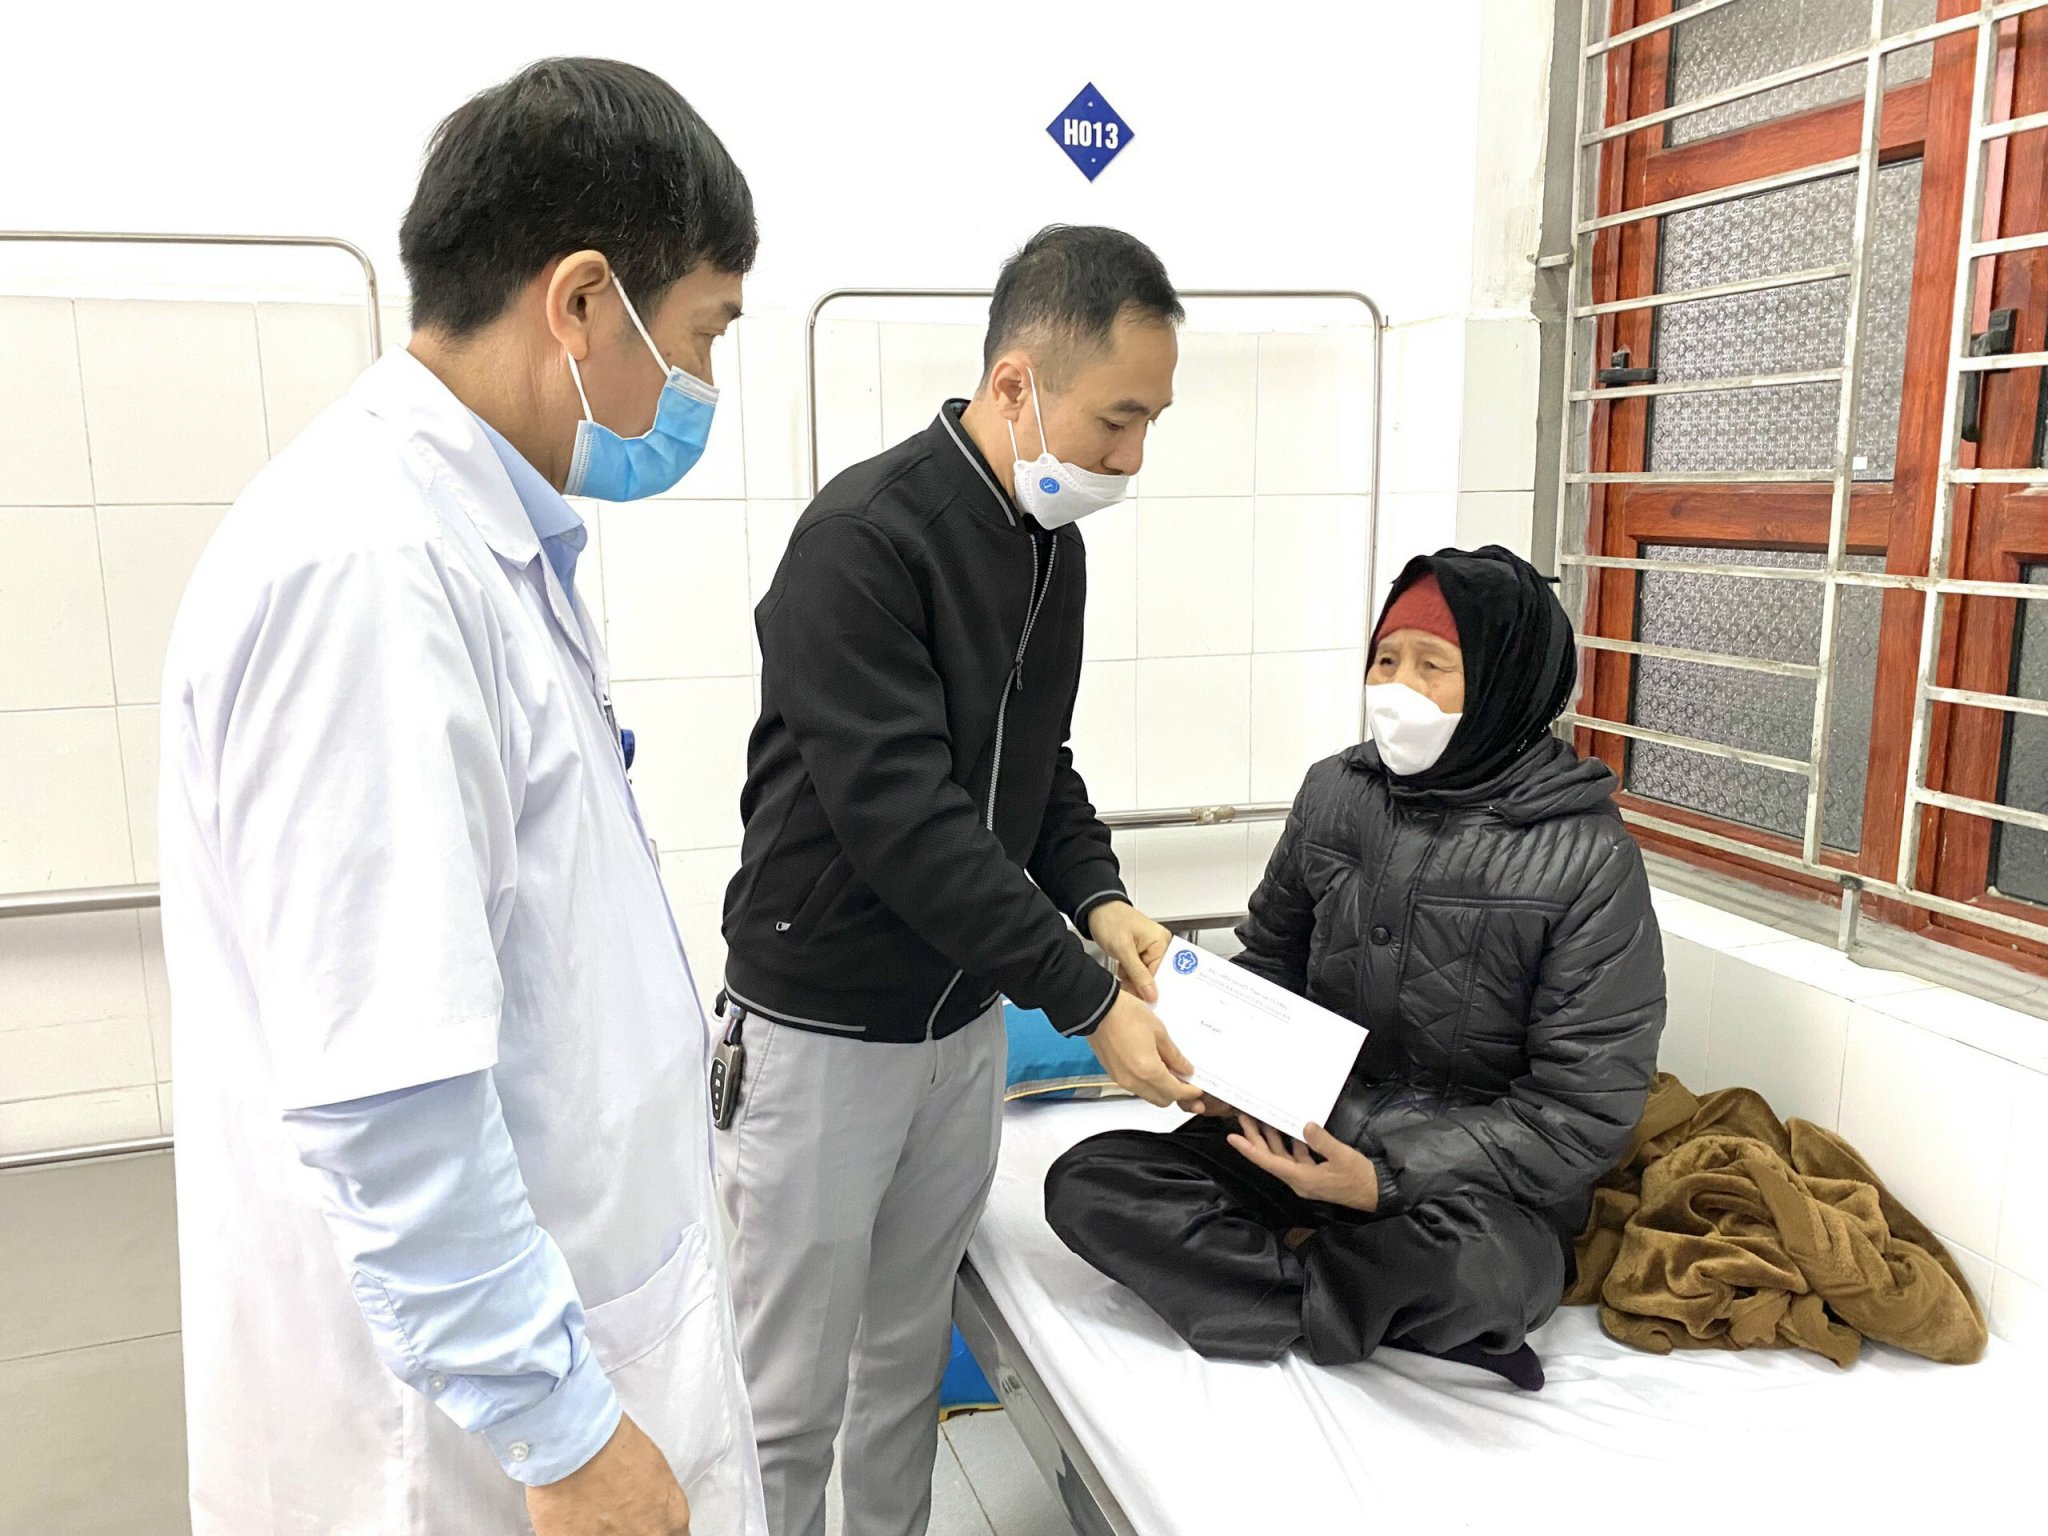 Bảo hiểm xã hội huyện phối hợp cùng Ban Giám đốc thăm, tặng quà bệnh nhân nghèo đang điều trị tại Trung tâm y tế huyện Thanh Hà.